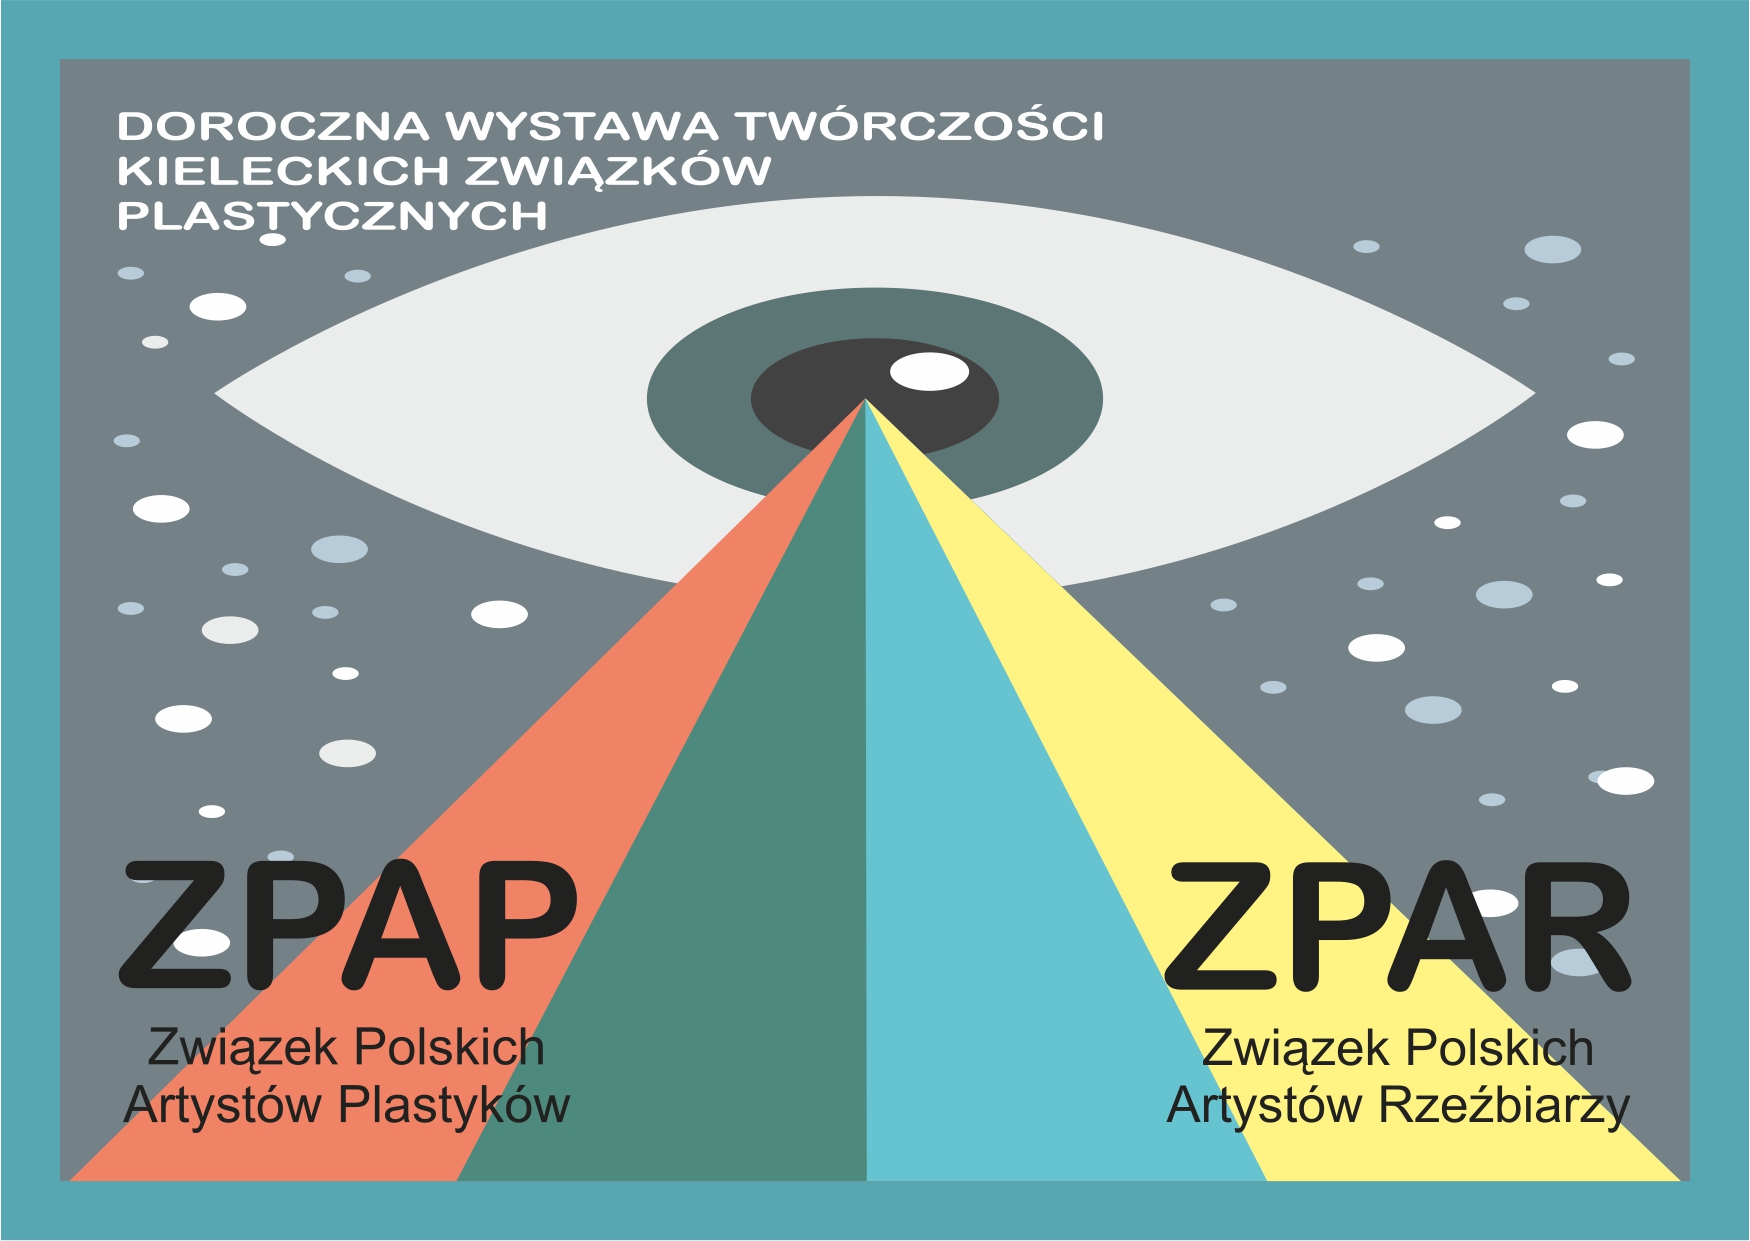 Doroczna wystawa twórczości kieleckich związków artystycznych ZPAP, ZPAR 2012 - 1